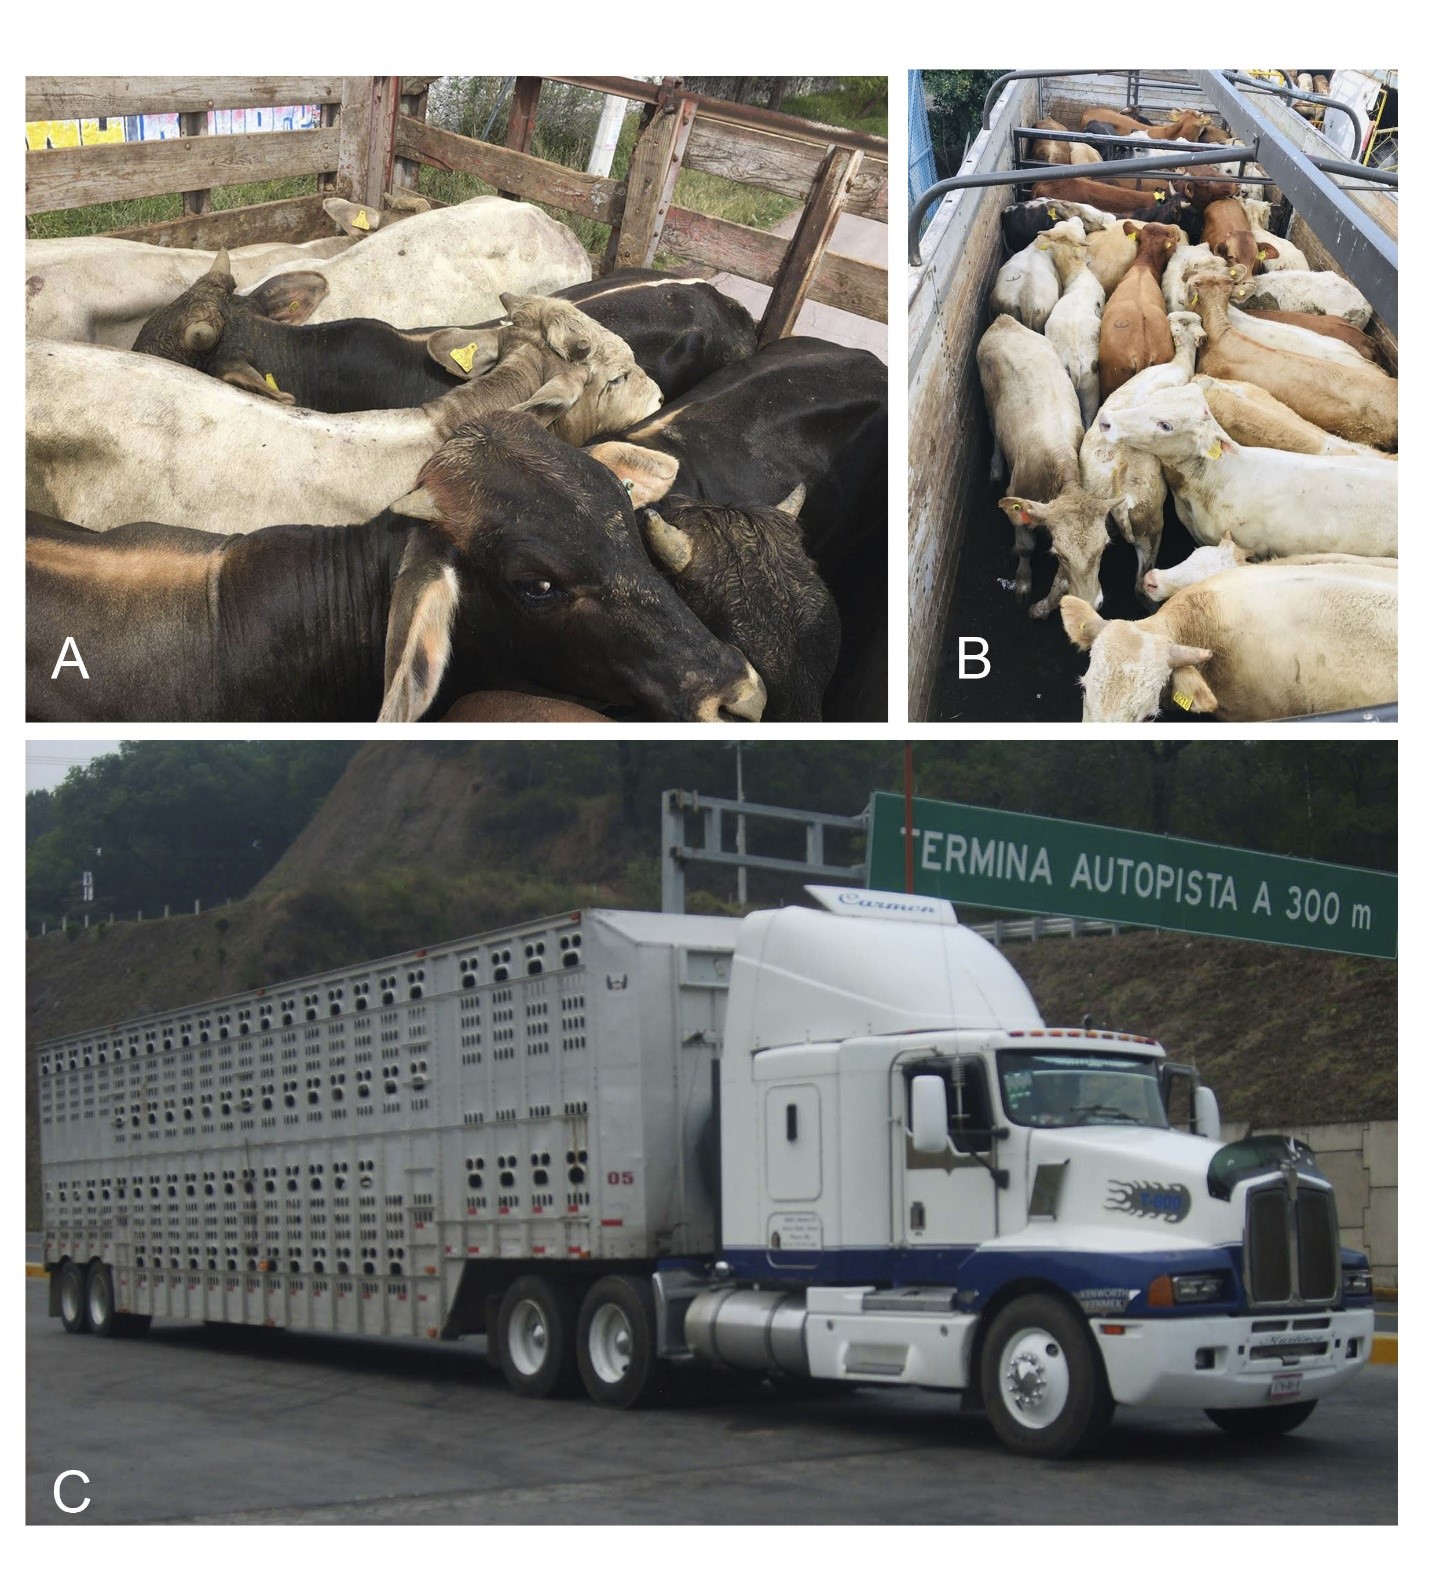 A) Vehículo con redilas para movilizar de 5 a 6 bovinos; B) Camiones de un eje trasero para movilizar de 25 a 30 bovinos; C) Tractor con jaula ganadera para movilizar mayor número de bovinos.